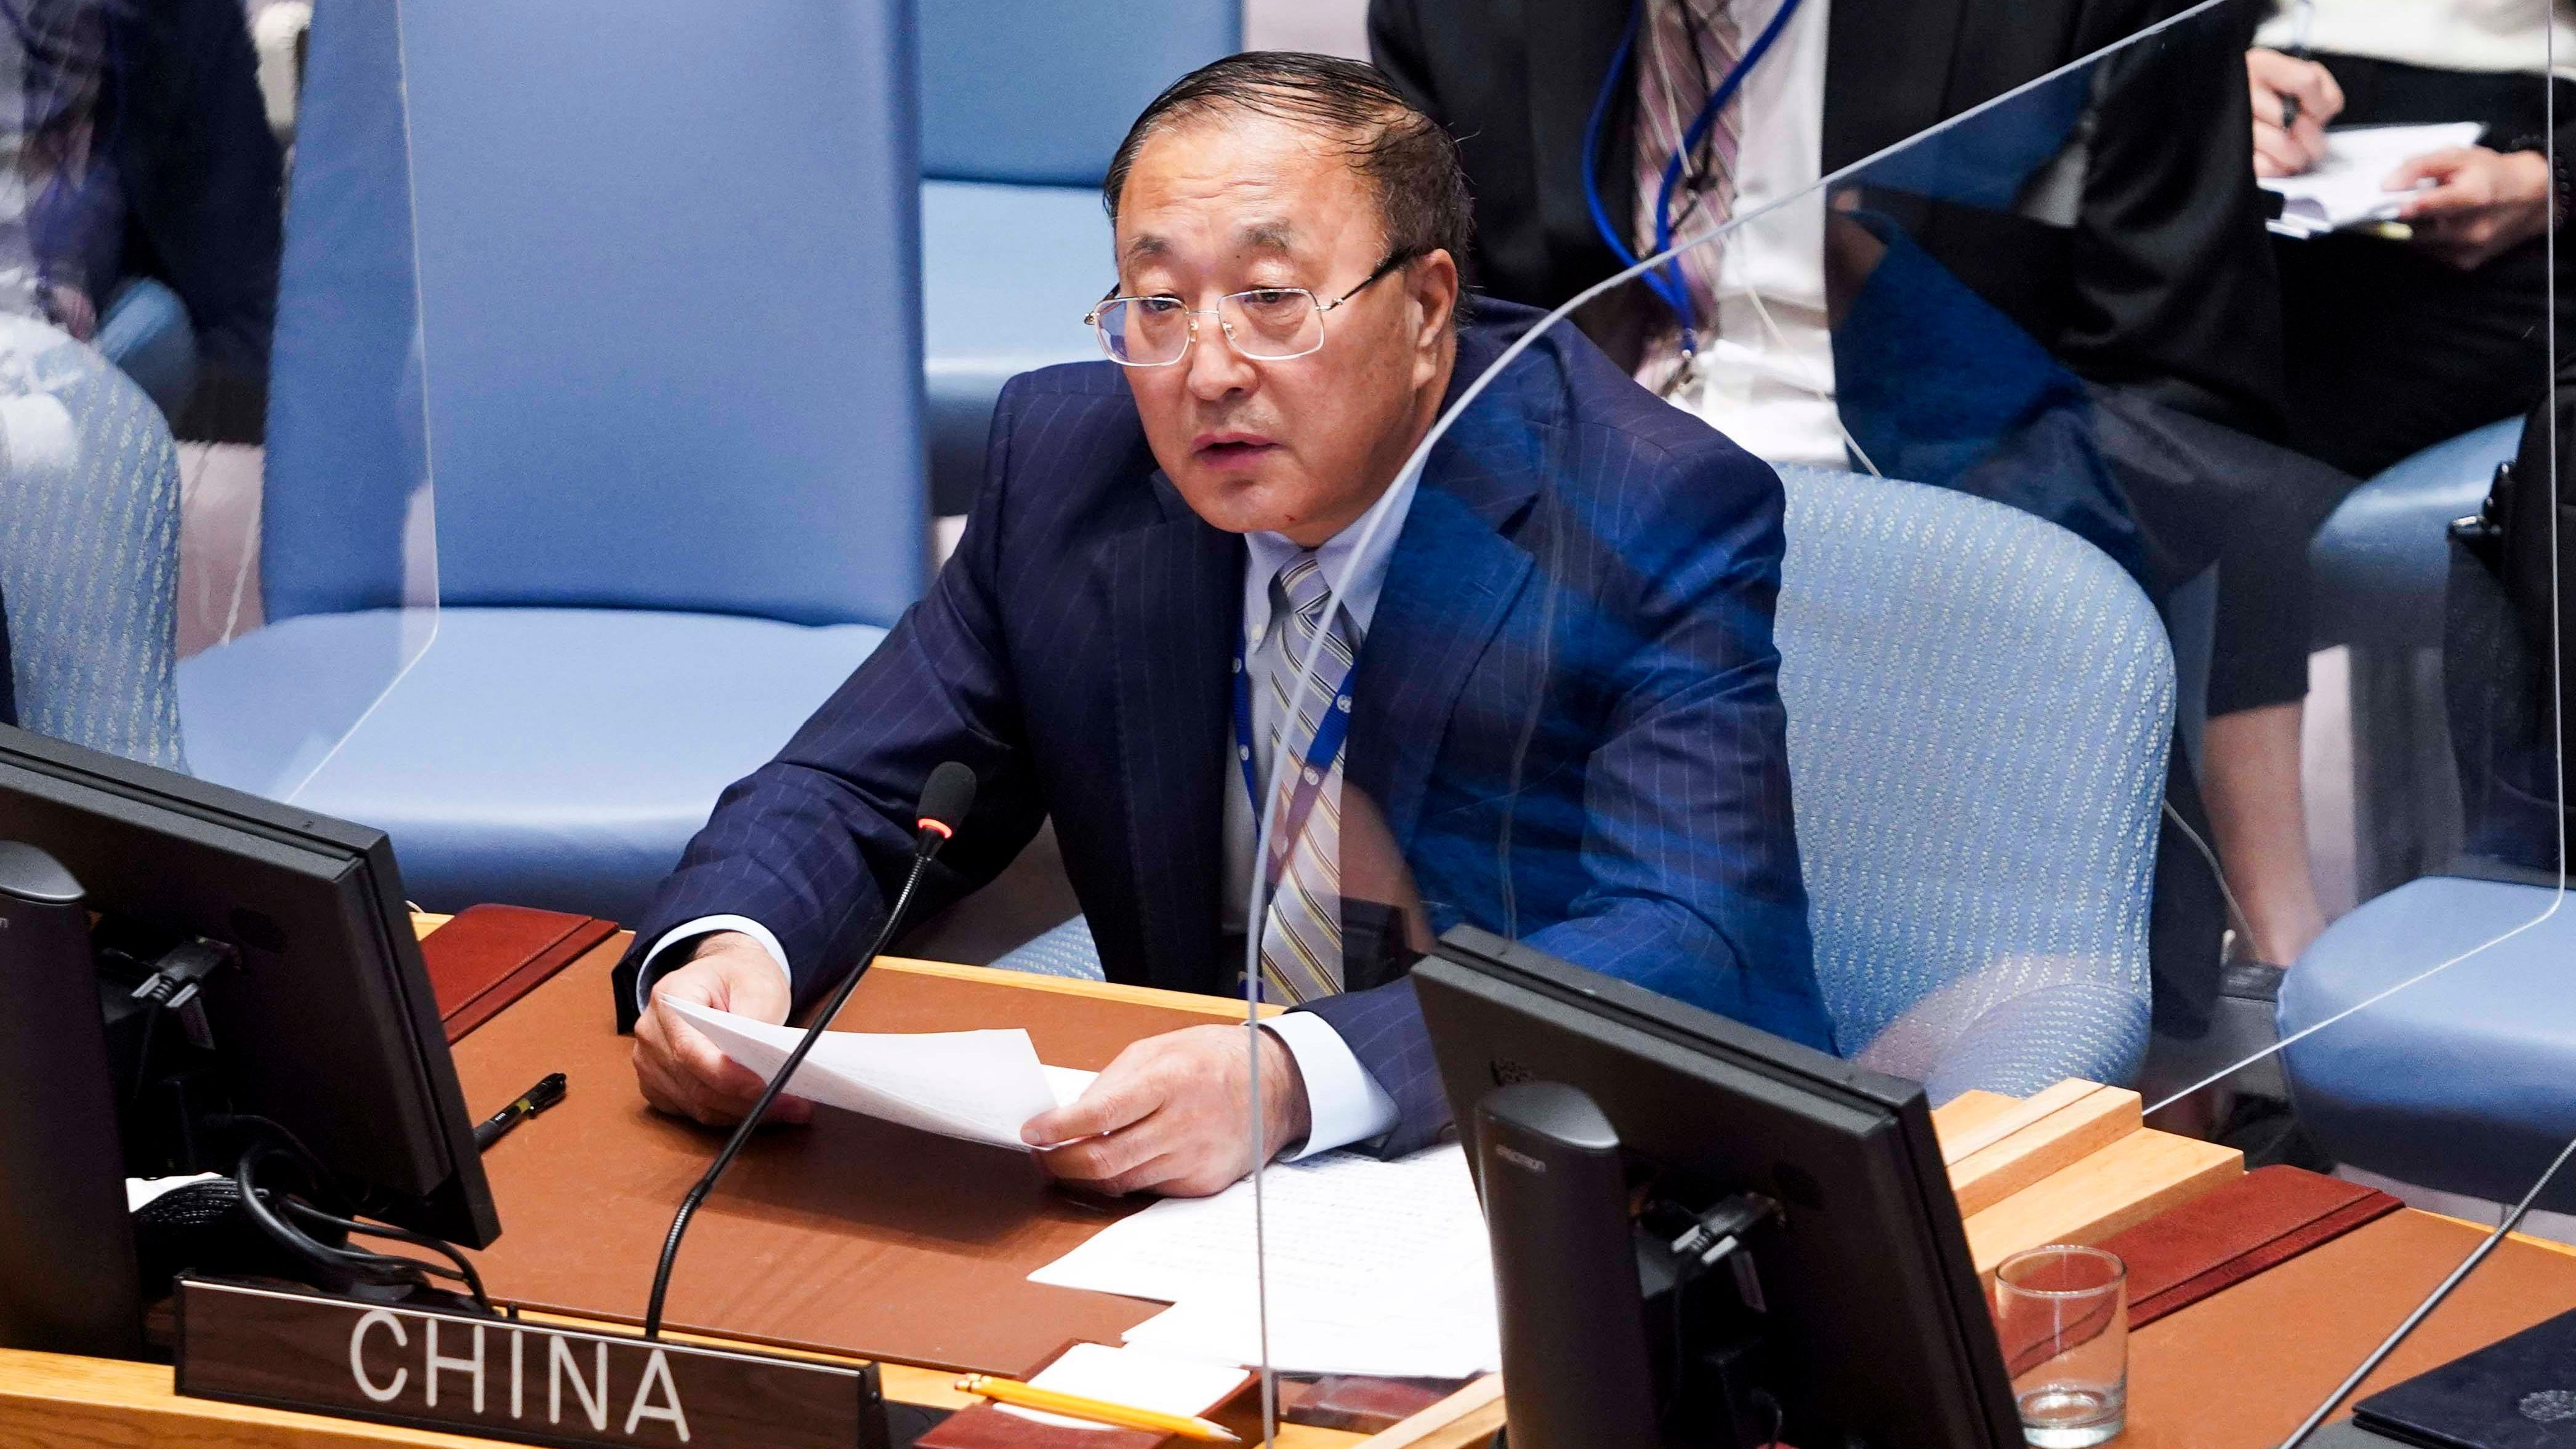 نماینده دائمی چین در سازمان ملل متحد: ما با سیاست بلوکی مخالفیما